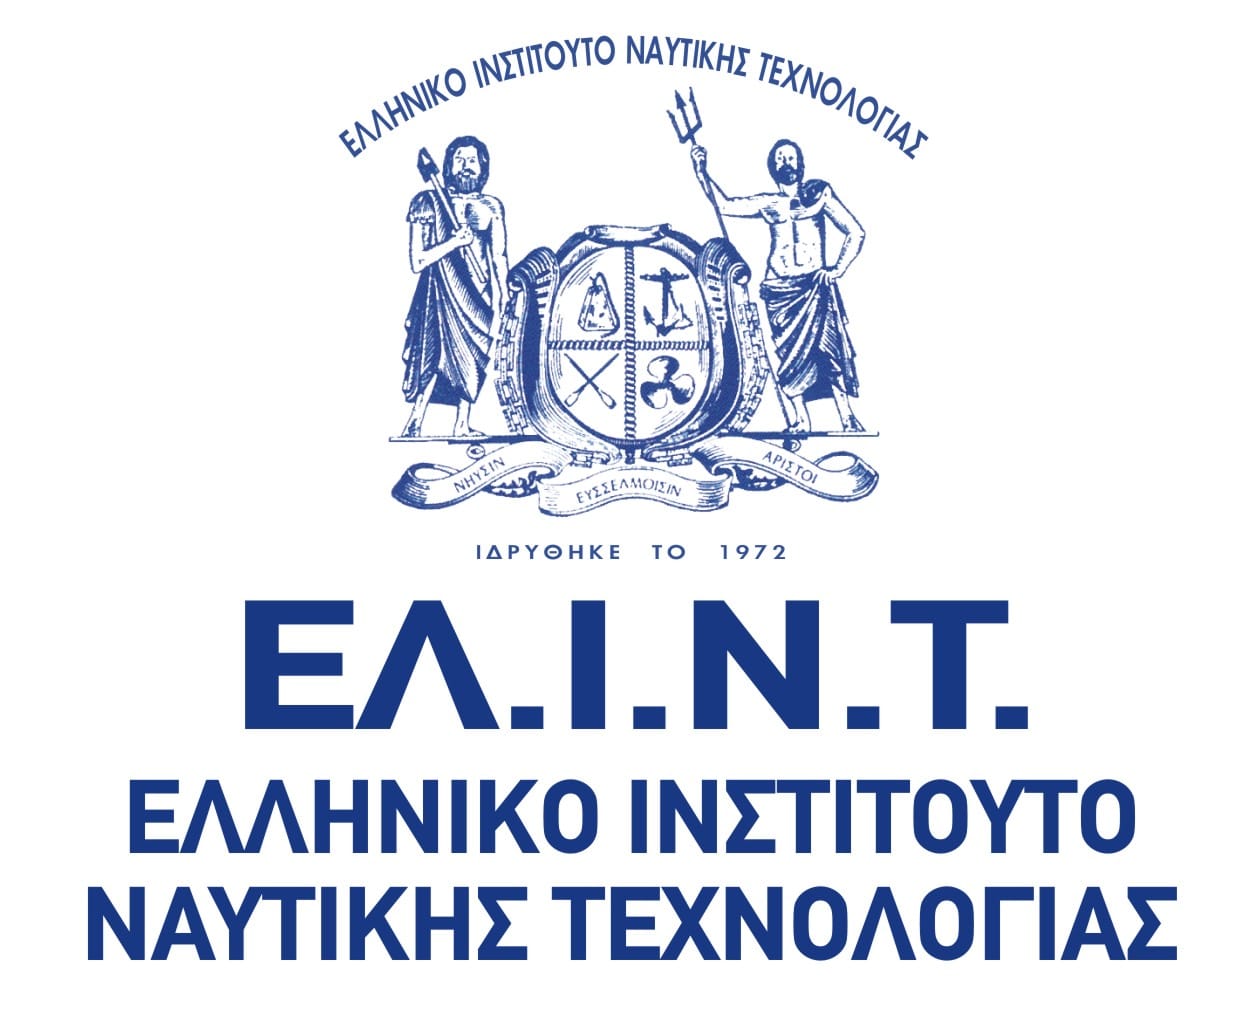 ΕΛ.Ι.Ν.Τ. – Ελληνικό Ινστιτούτο Ναυτικής Τεχνολογίας